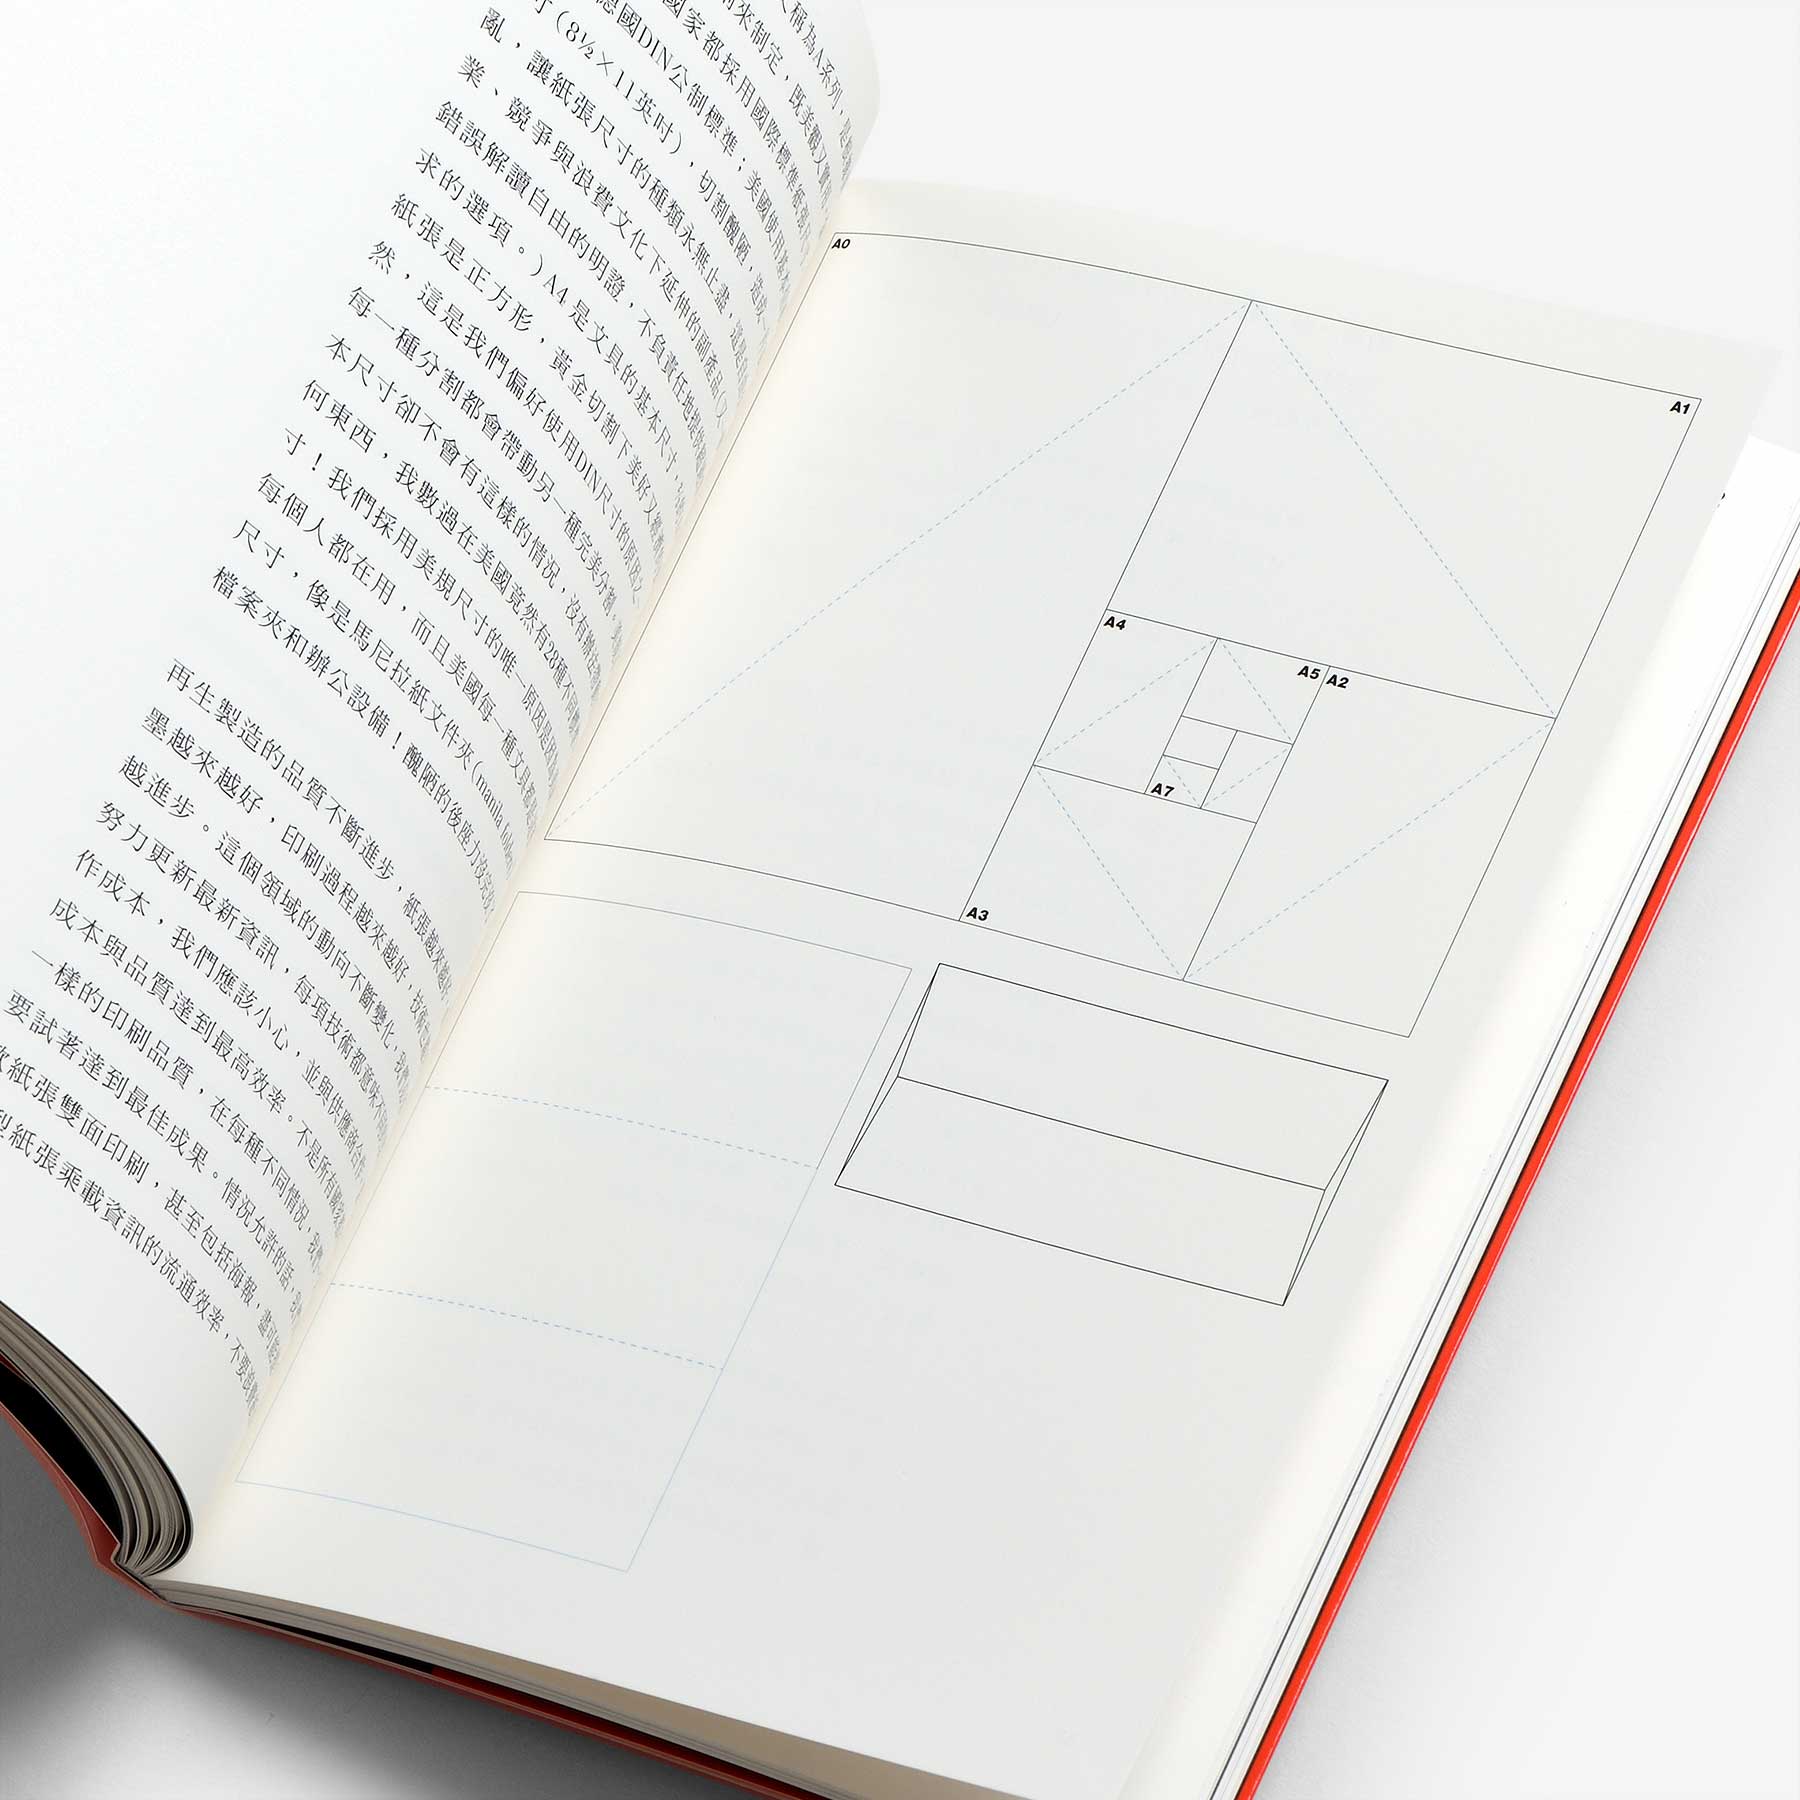 設計準則: Massimo Vignelli （The Vignelli Canon）